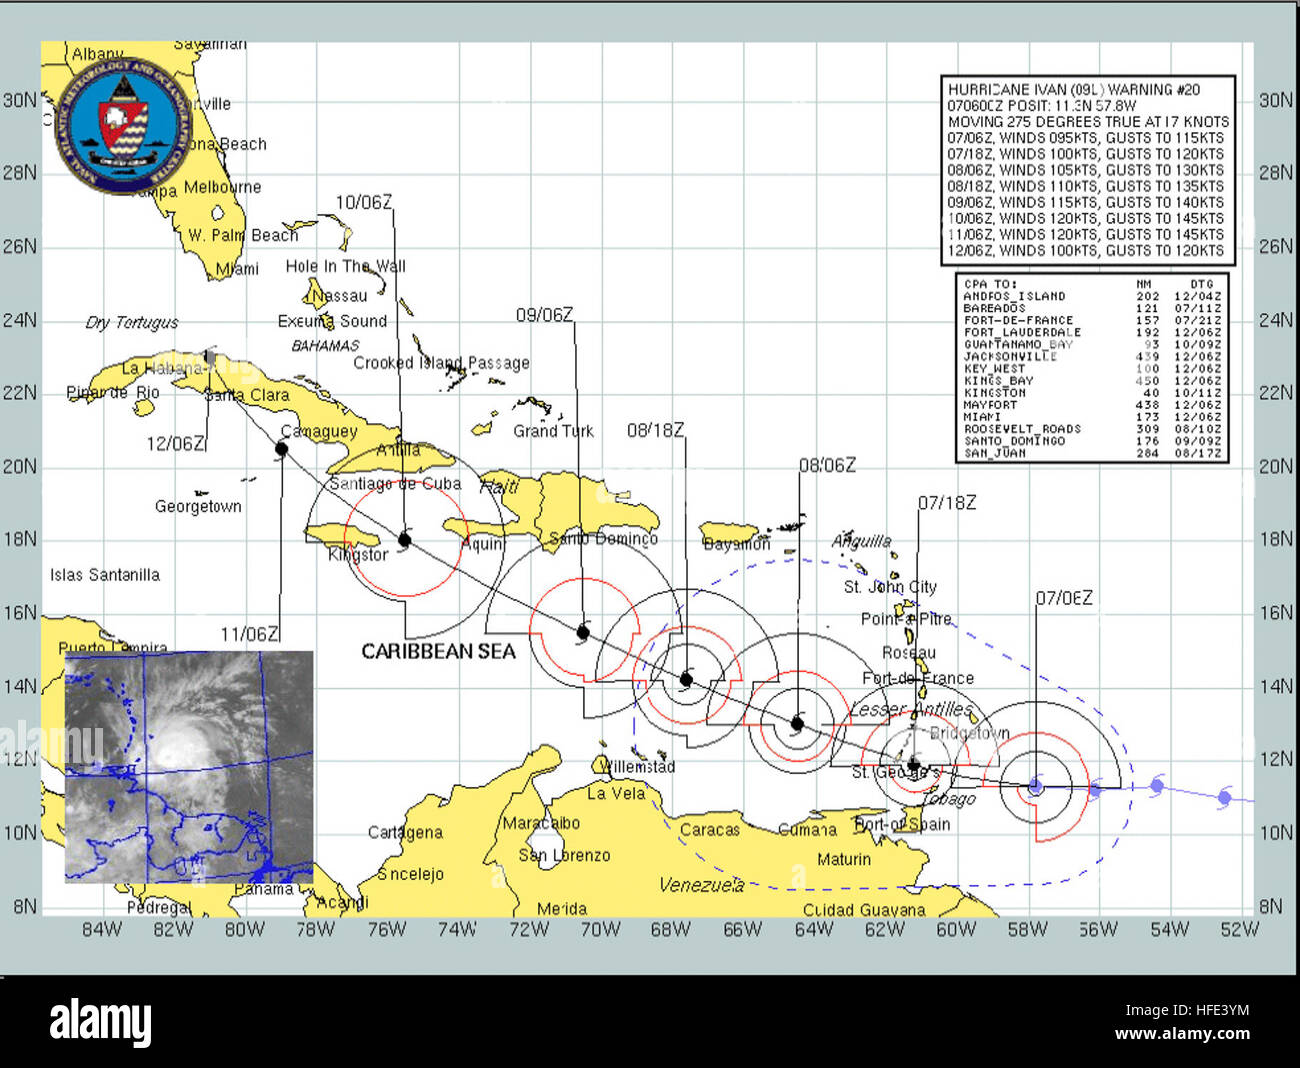 040907-N-0000X-001 del Océano Atlántico (Sept. 7, 2004) - pronóstico actual senda proyectada y las velocidades del viento del huracán Iván en septiembre del 7 al 12 de septiembre. Iván, un huracán de categoría tres en la escala Saffir-Simpson de huracanes, está a aproximadamente 45 millas al noreste de Tobago, desplazando a cerca de 18 MPH. Vientos máximos sostenidos permanecen cerca de 115 km/h con vientos extender hacia afuera hasta 70 millas. La tormenta se espera que gire gradualmente hacia el oeste-noroeste en la tarde del martes. Los pronosticadores dice Ivan es el huracán más poderoso para desarrollar en esa latitud baja registrada en la historia de huracanes del Atlántico. Foto proporcionada por Foto de stock